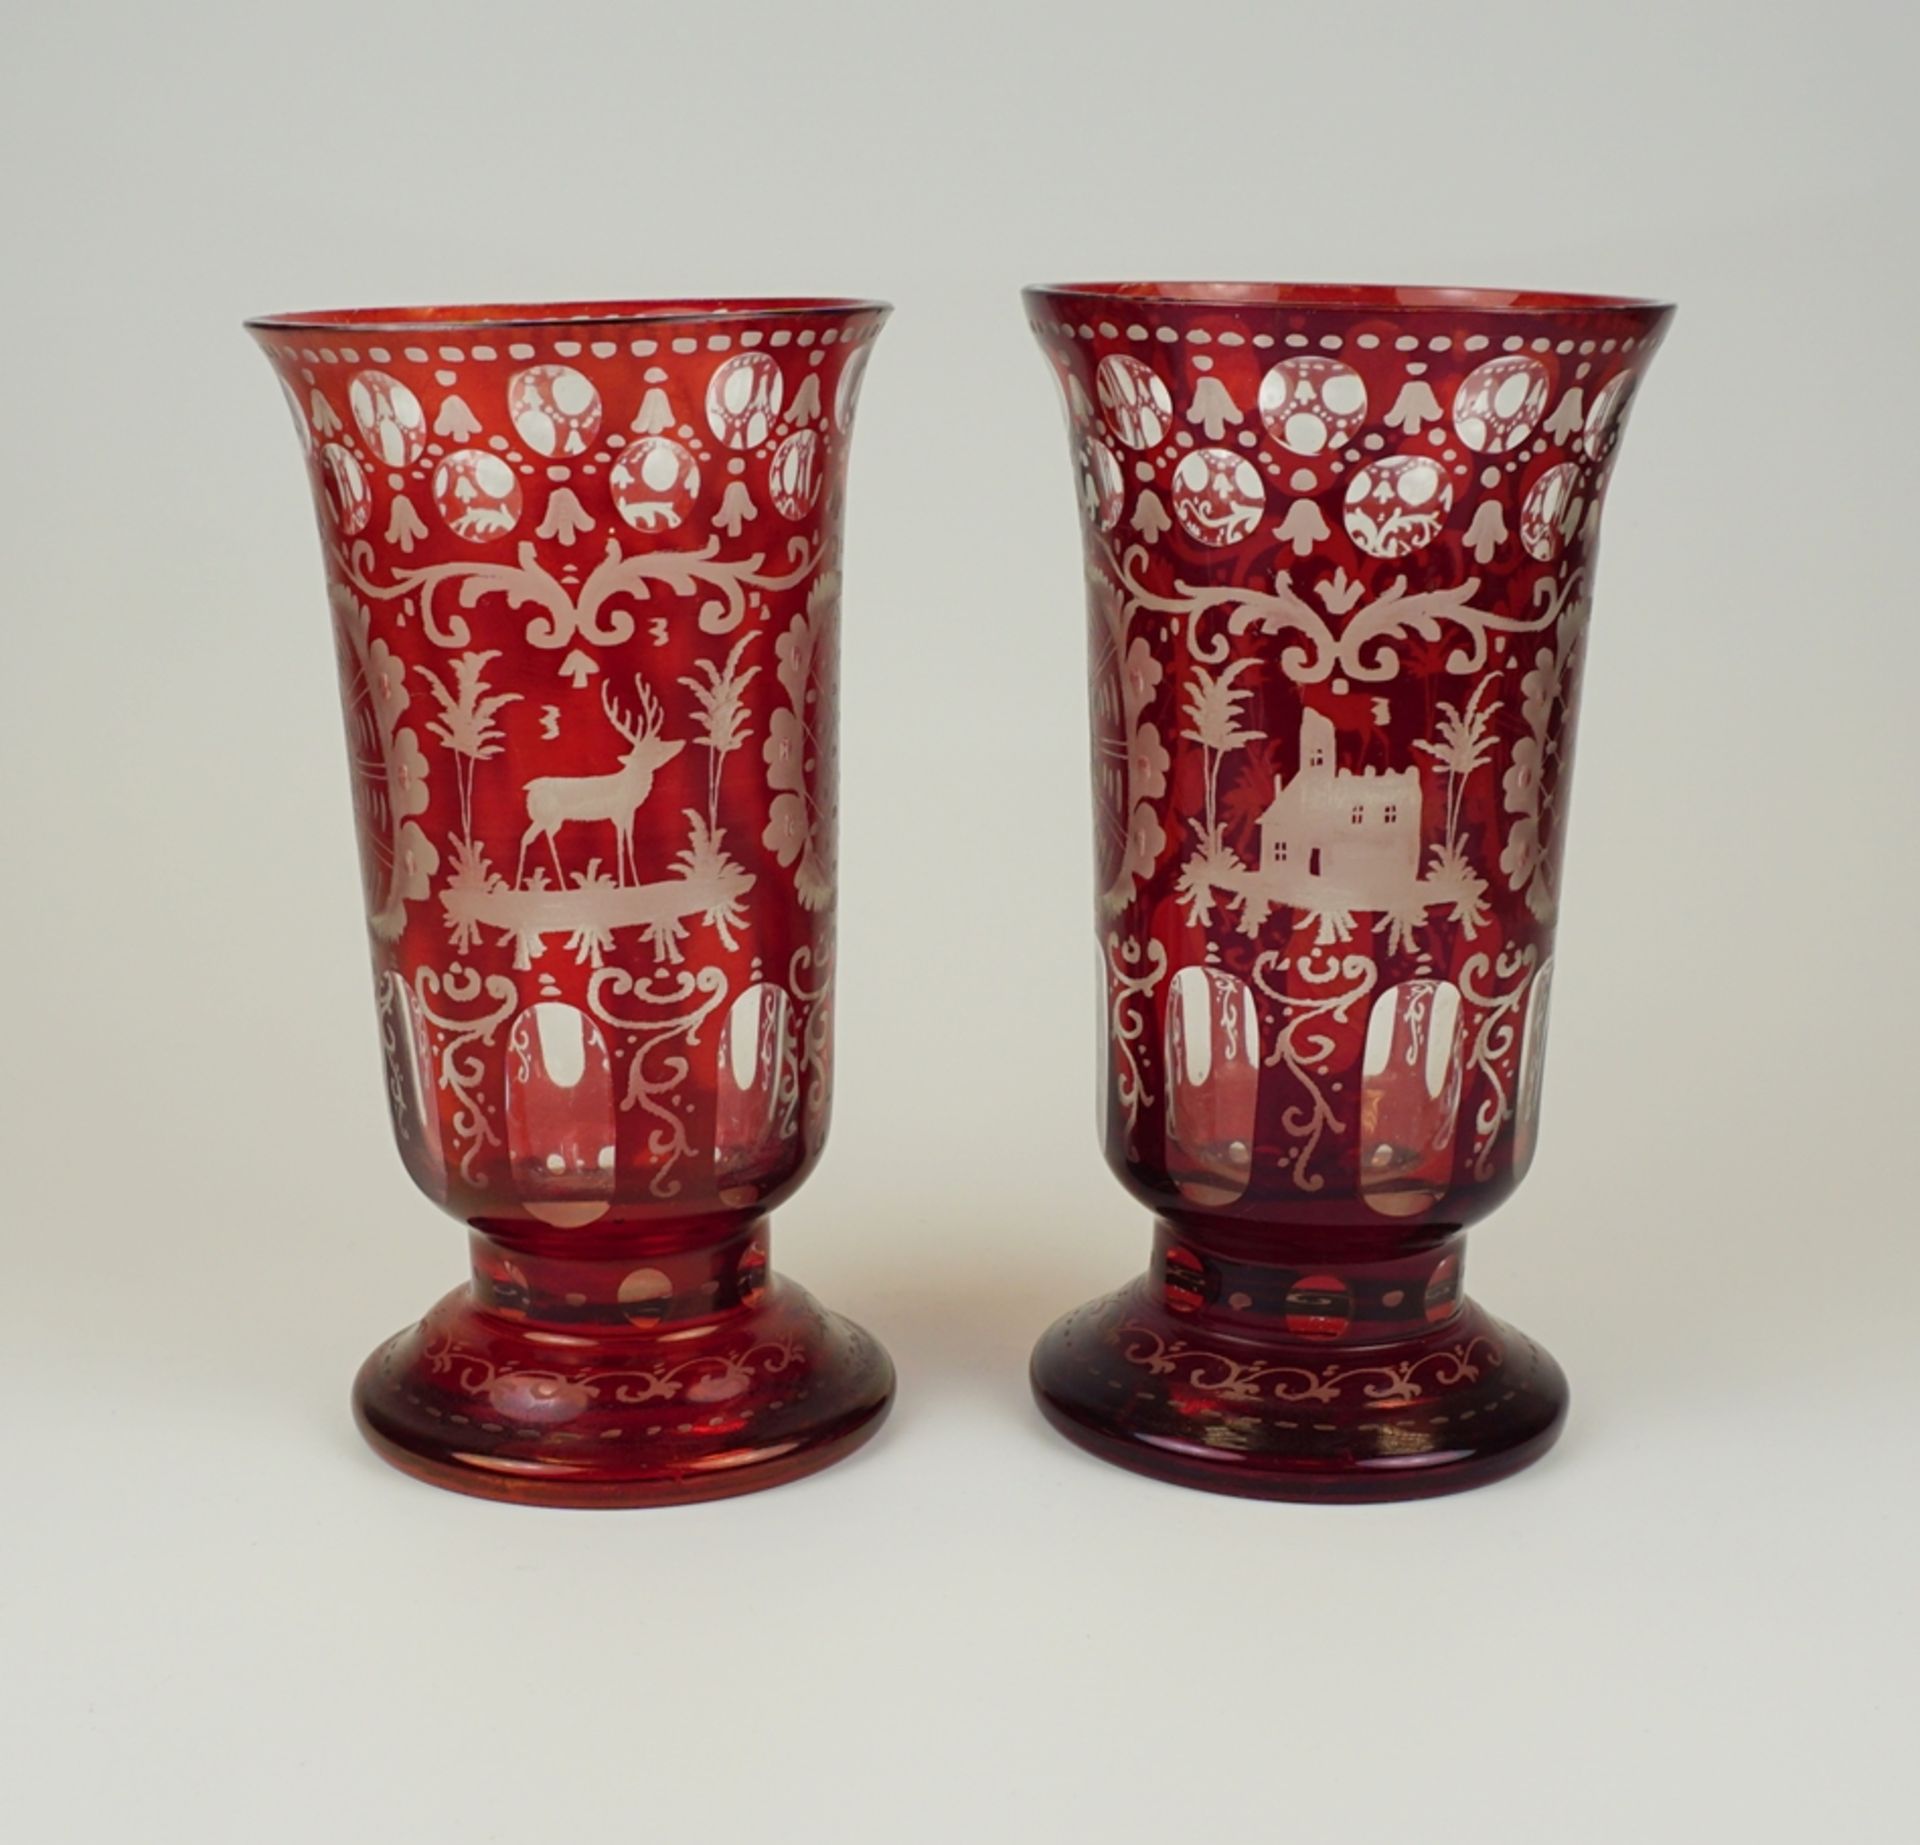 Paar Vasen, Friedrich Egermann in Haida, Böhmen, rubinrot gebeizt, um 1880 - Image 2 of 2